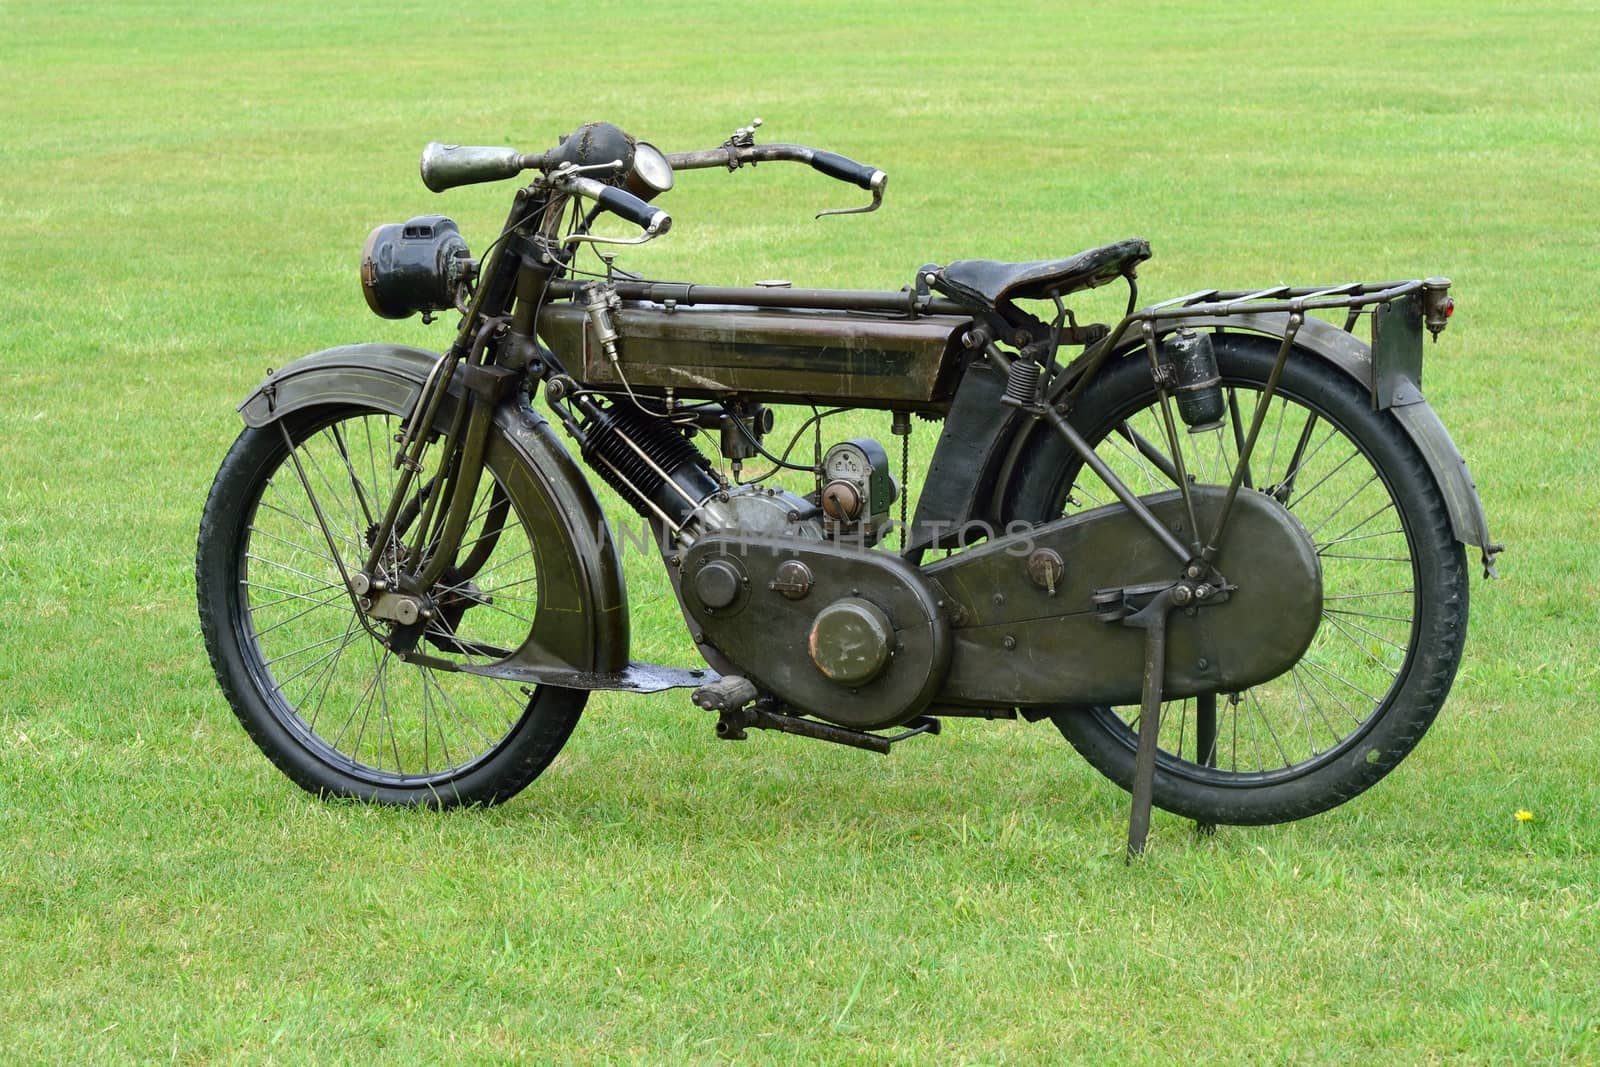 wartime motorbike by pauws99